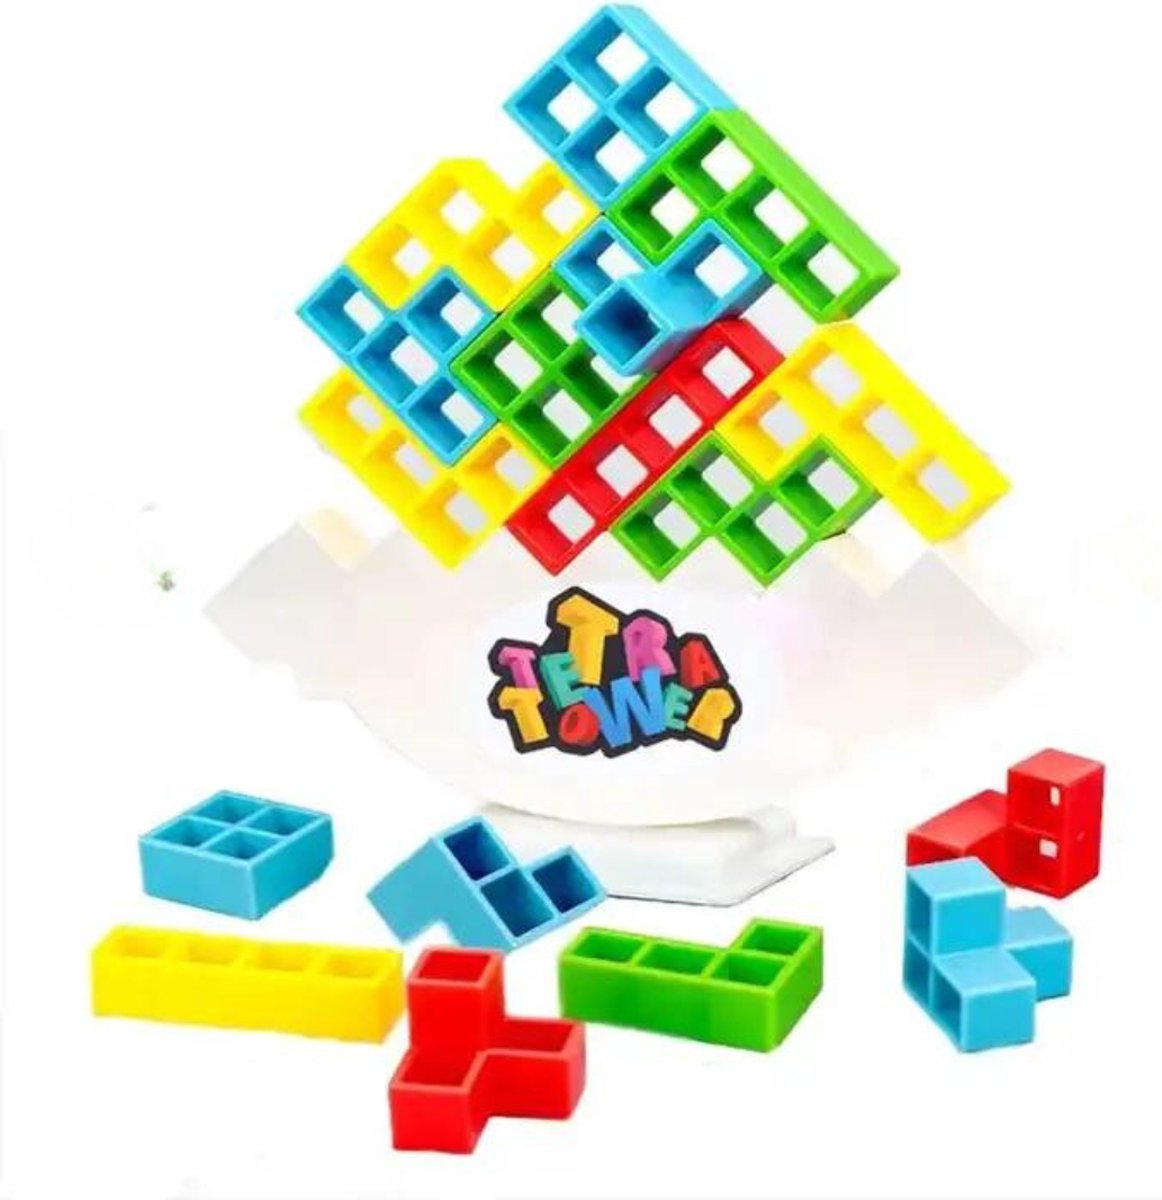 Merkloos Tetra Tower Balans Spel 32 stuks- Tetra Tower Spel Tetris tower Bouwset Bouwpuzzel Montessori Speelgoed Educatief speelgoed Creatief speelgoed Tiktok 32 stuks